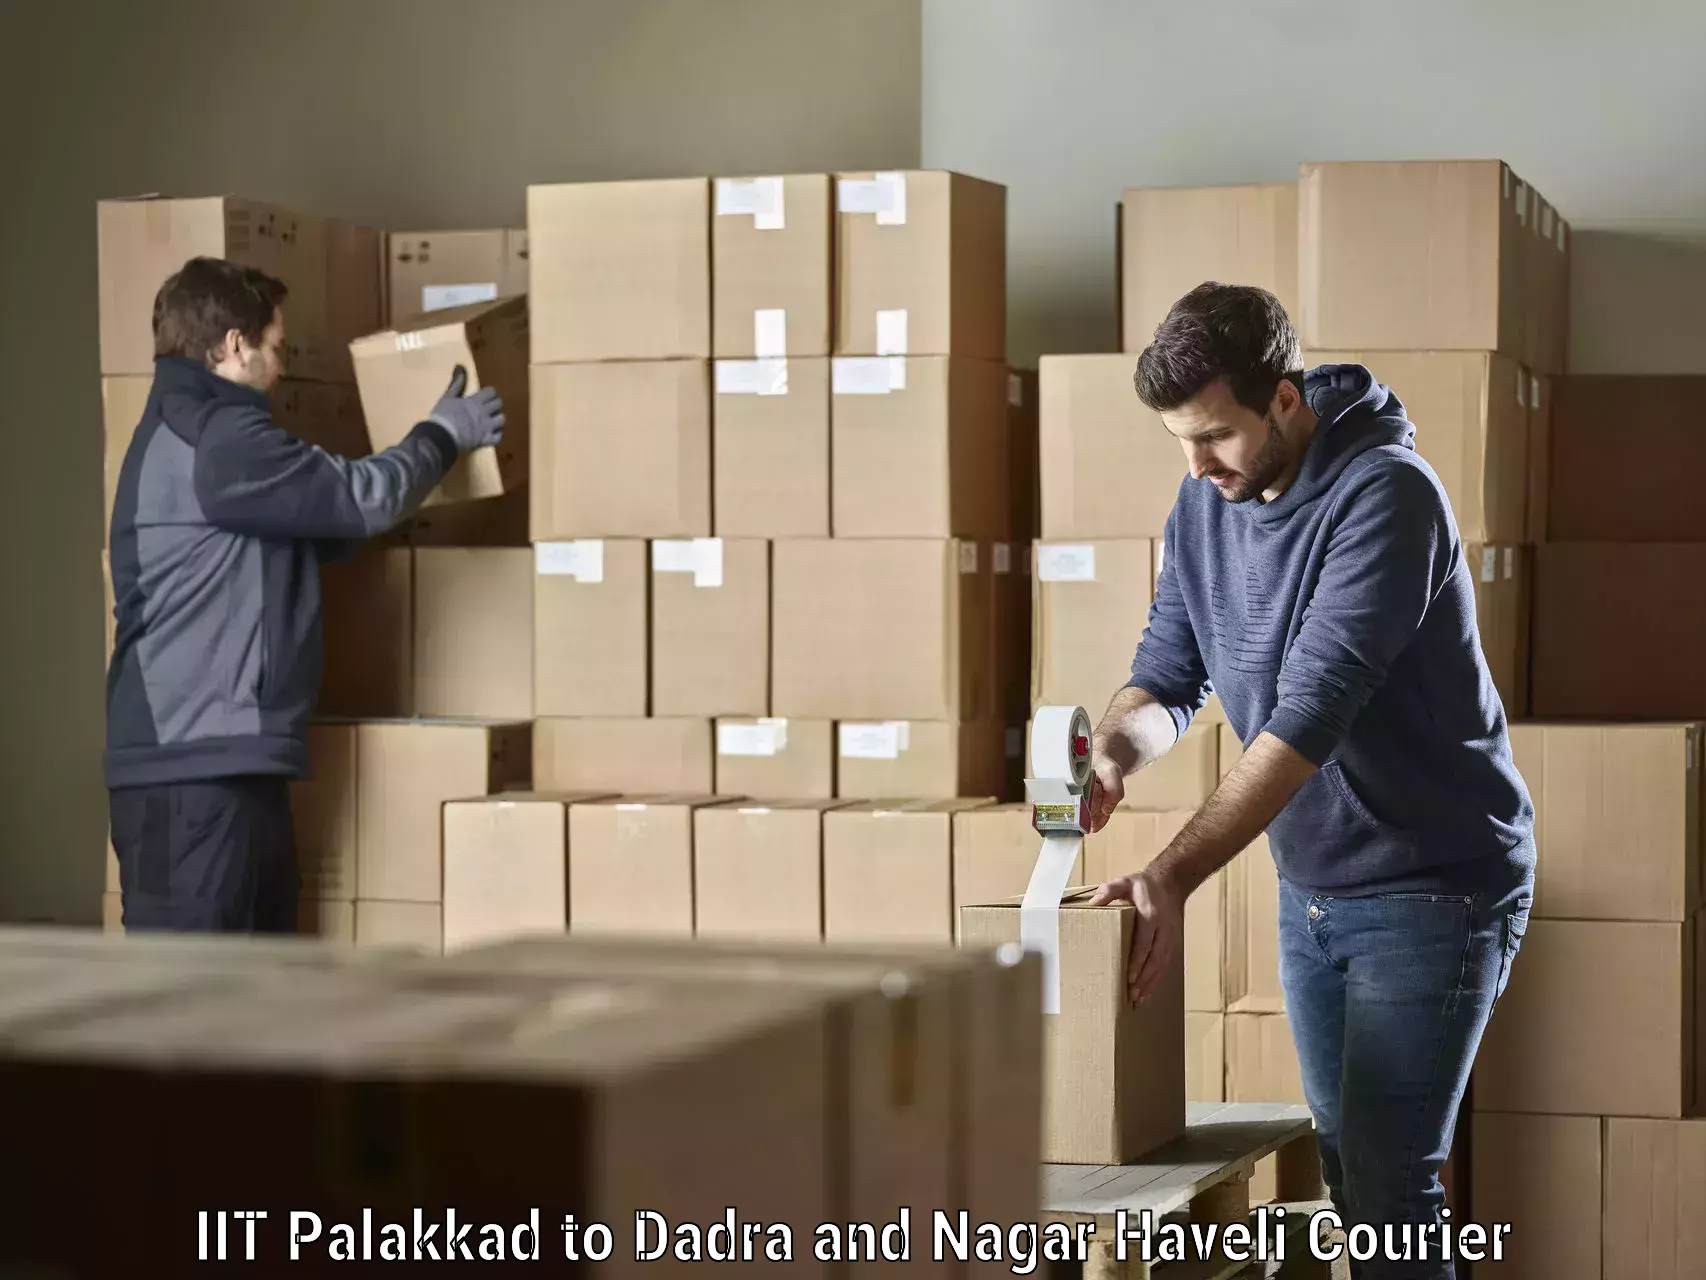 Efficient parcel tracking IIT Palakkad to Silvassa